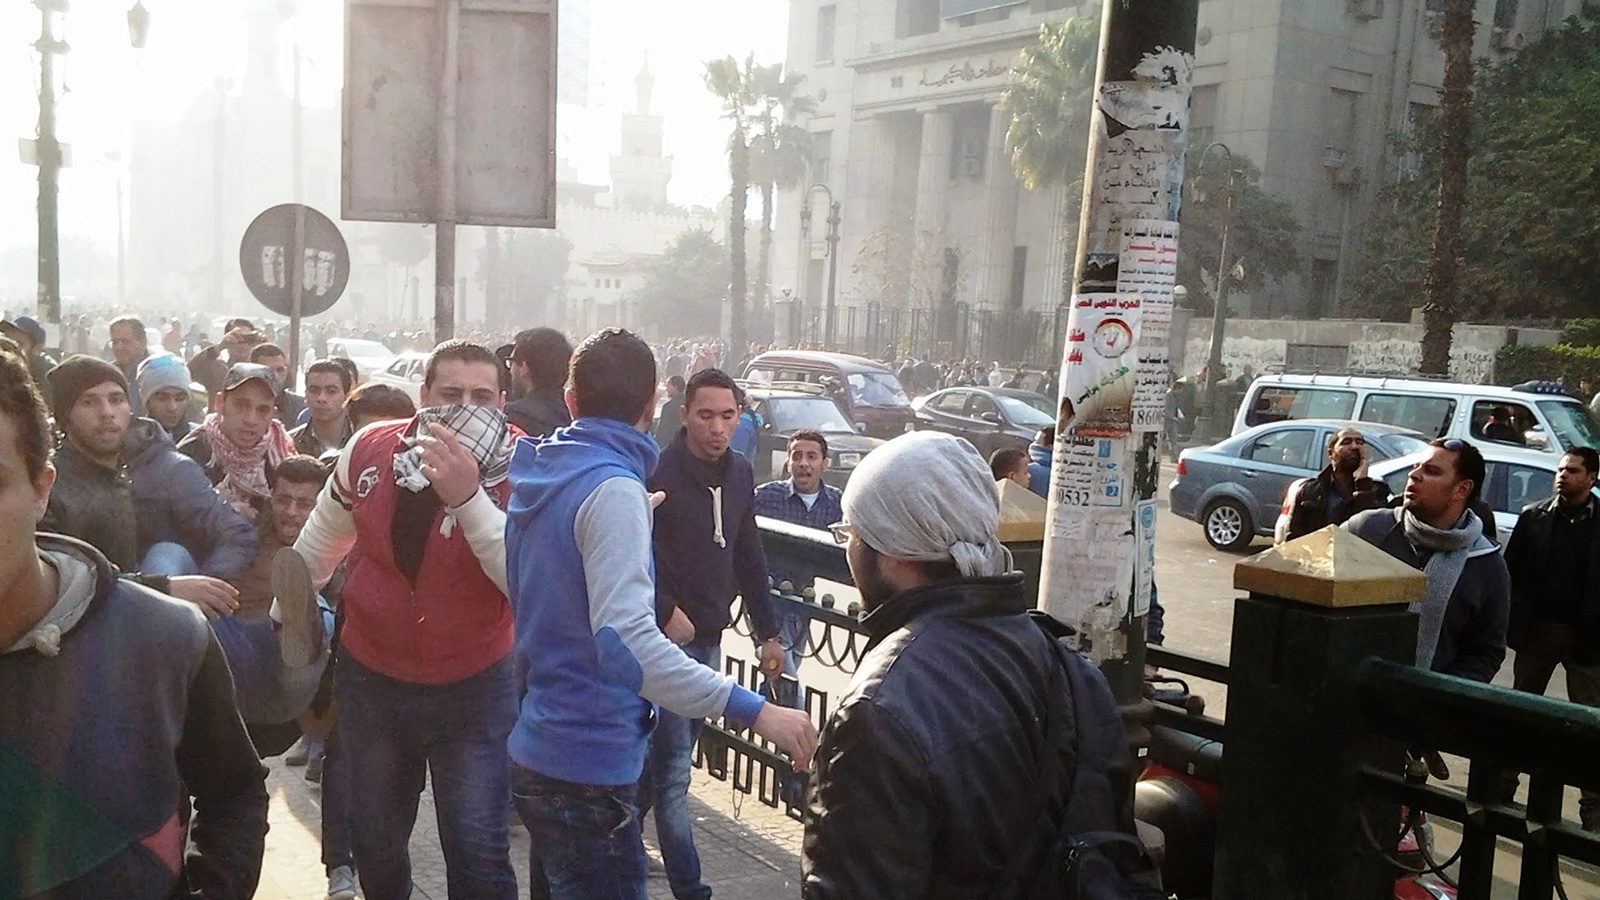 ‪انتهاكات حقوق الإنسان بالاعتداء على المتظاهرين في الشوارع أسلوب معتاد للنظام وفقا لمعارضين‬ (الجزيرة)